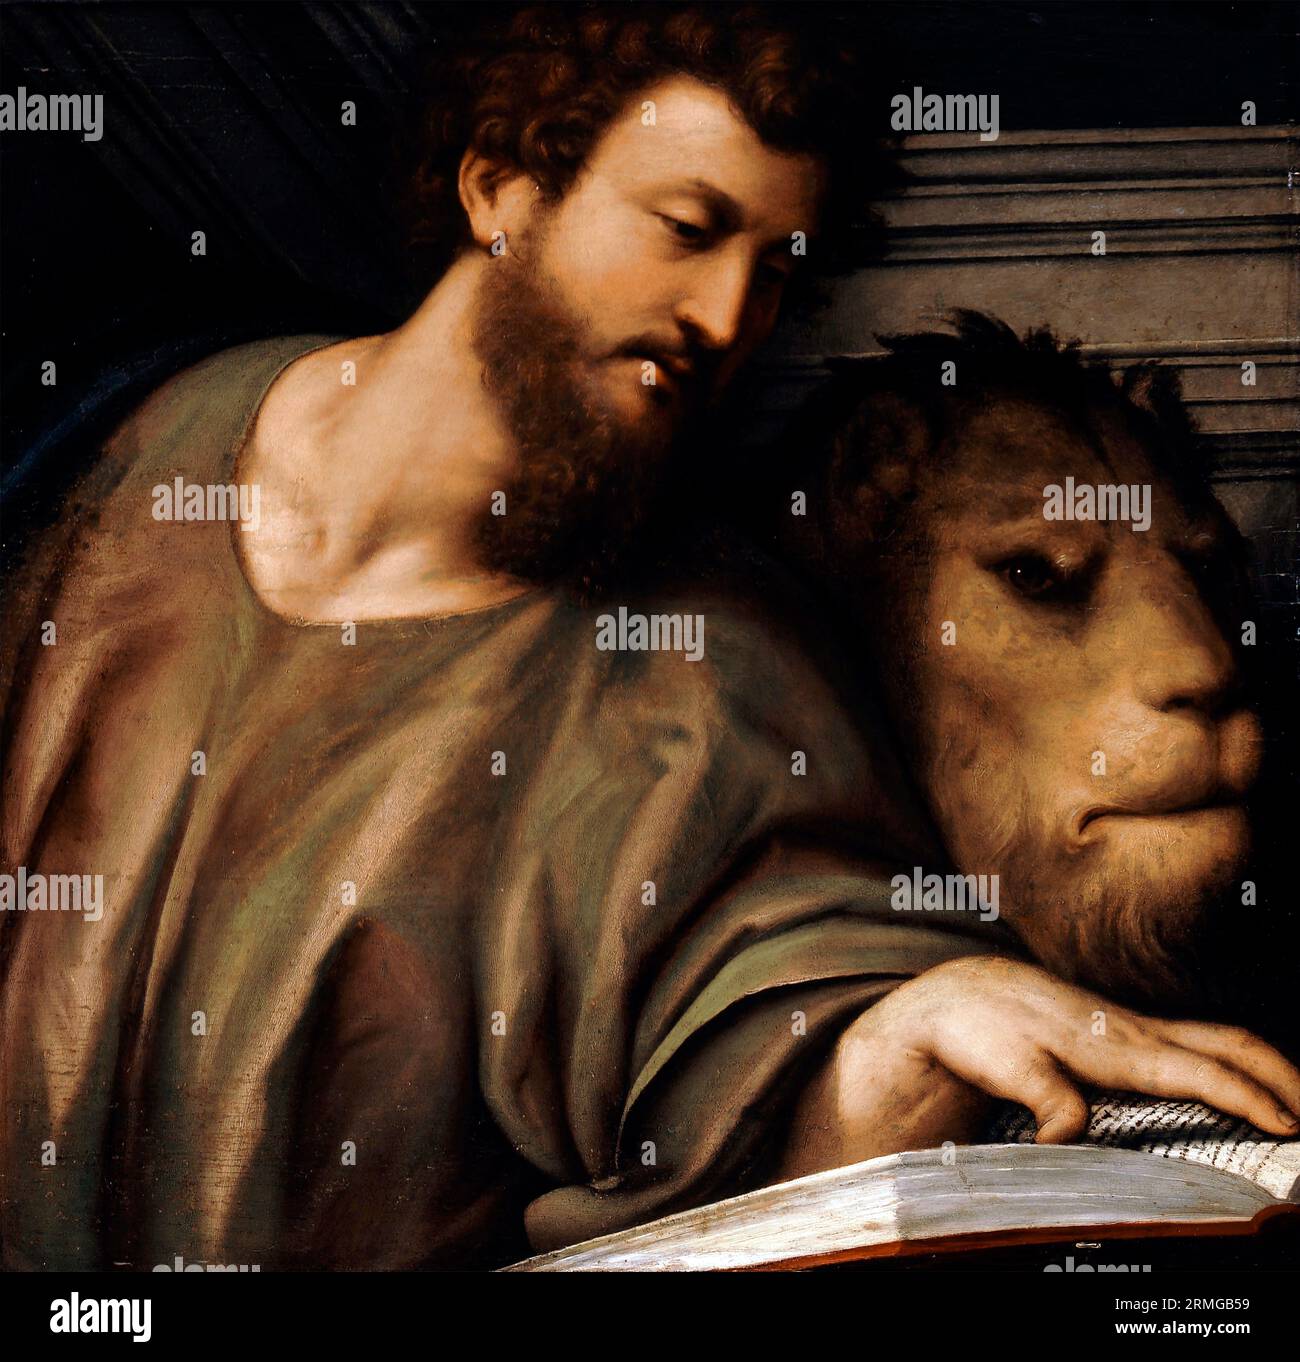 Saint Marc l’Evangéliste de il Pordenone (Giovanni Antonio de’ Sacchis : c. 1484-1539), huile sur bois, c. 1535 Banque D'Images